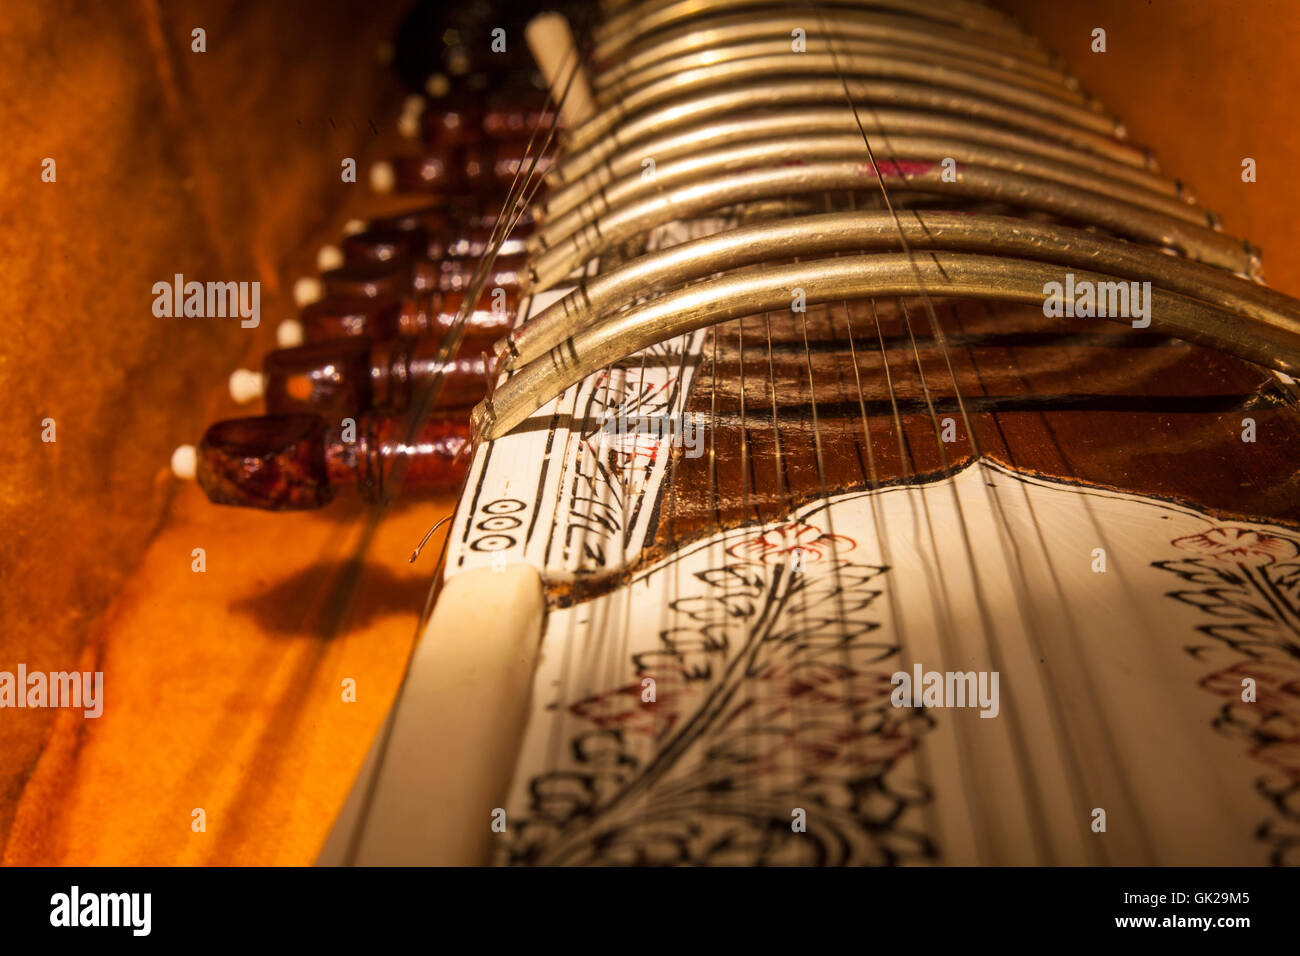 Instrument bei der Sitar, einem traditionellen indischen musikalischen Saiteninstrument. Close-up Stockfoto